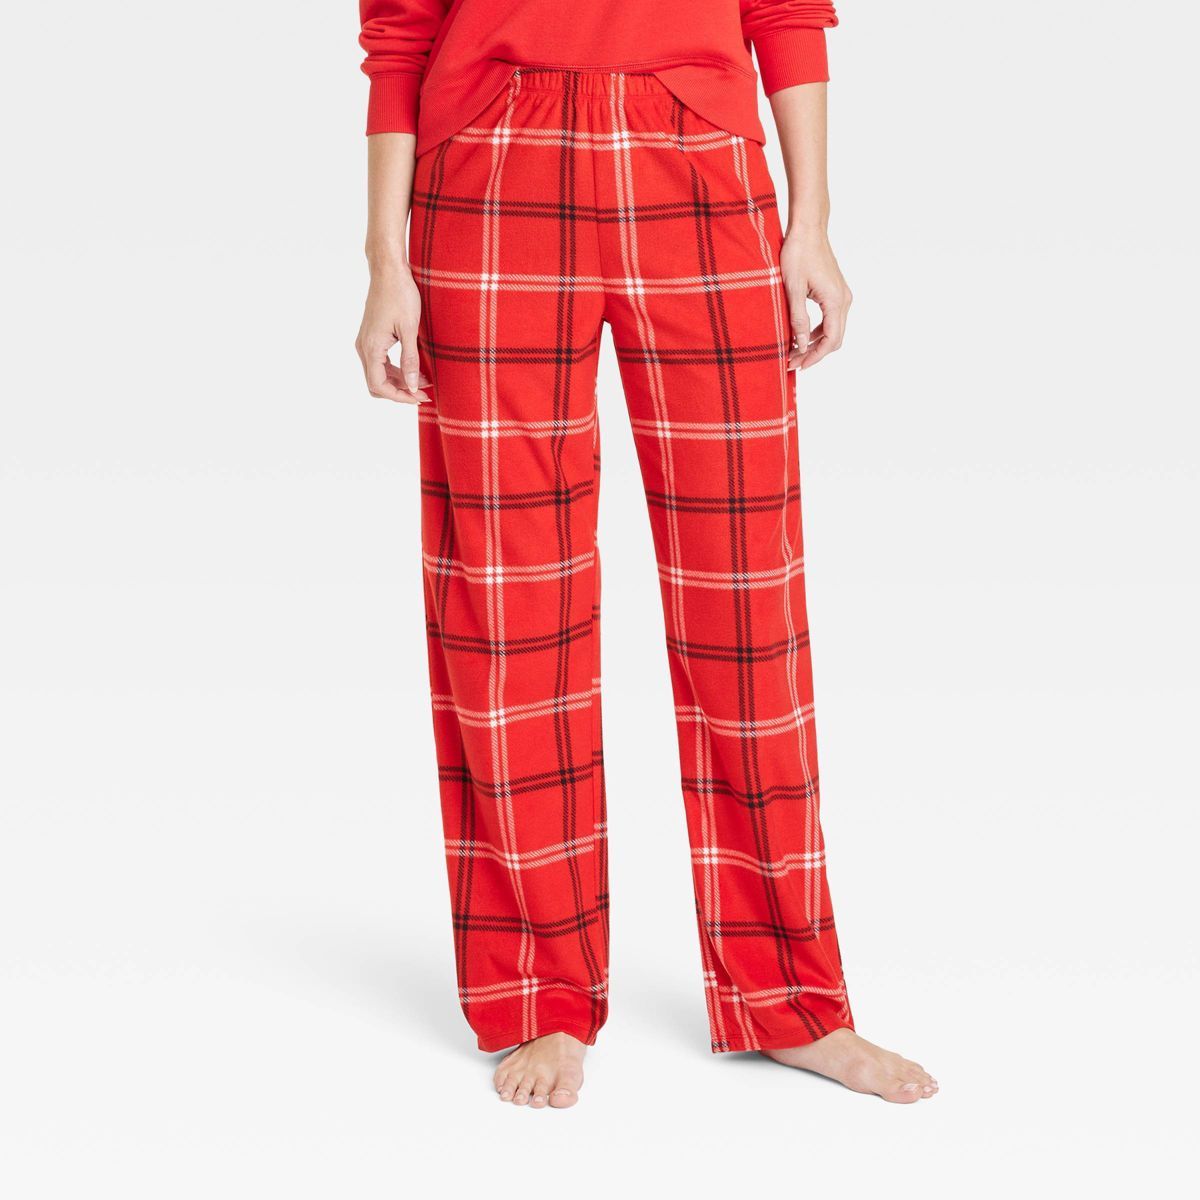 Women's Plaid Fleece Matching Family Pajama Pants - Wondershop™ Red 4X | Target